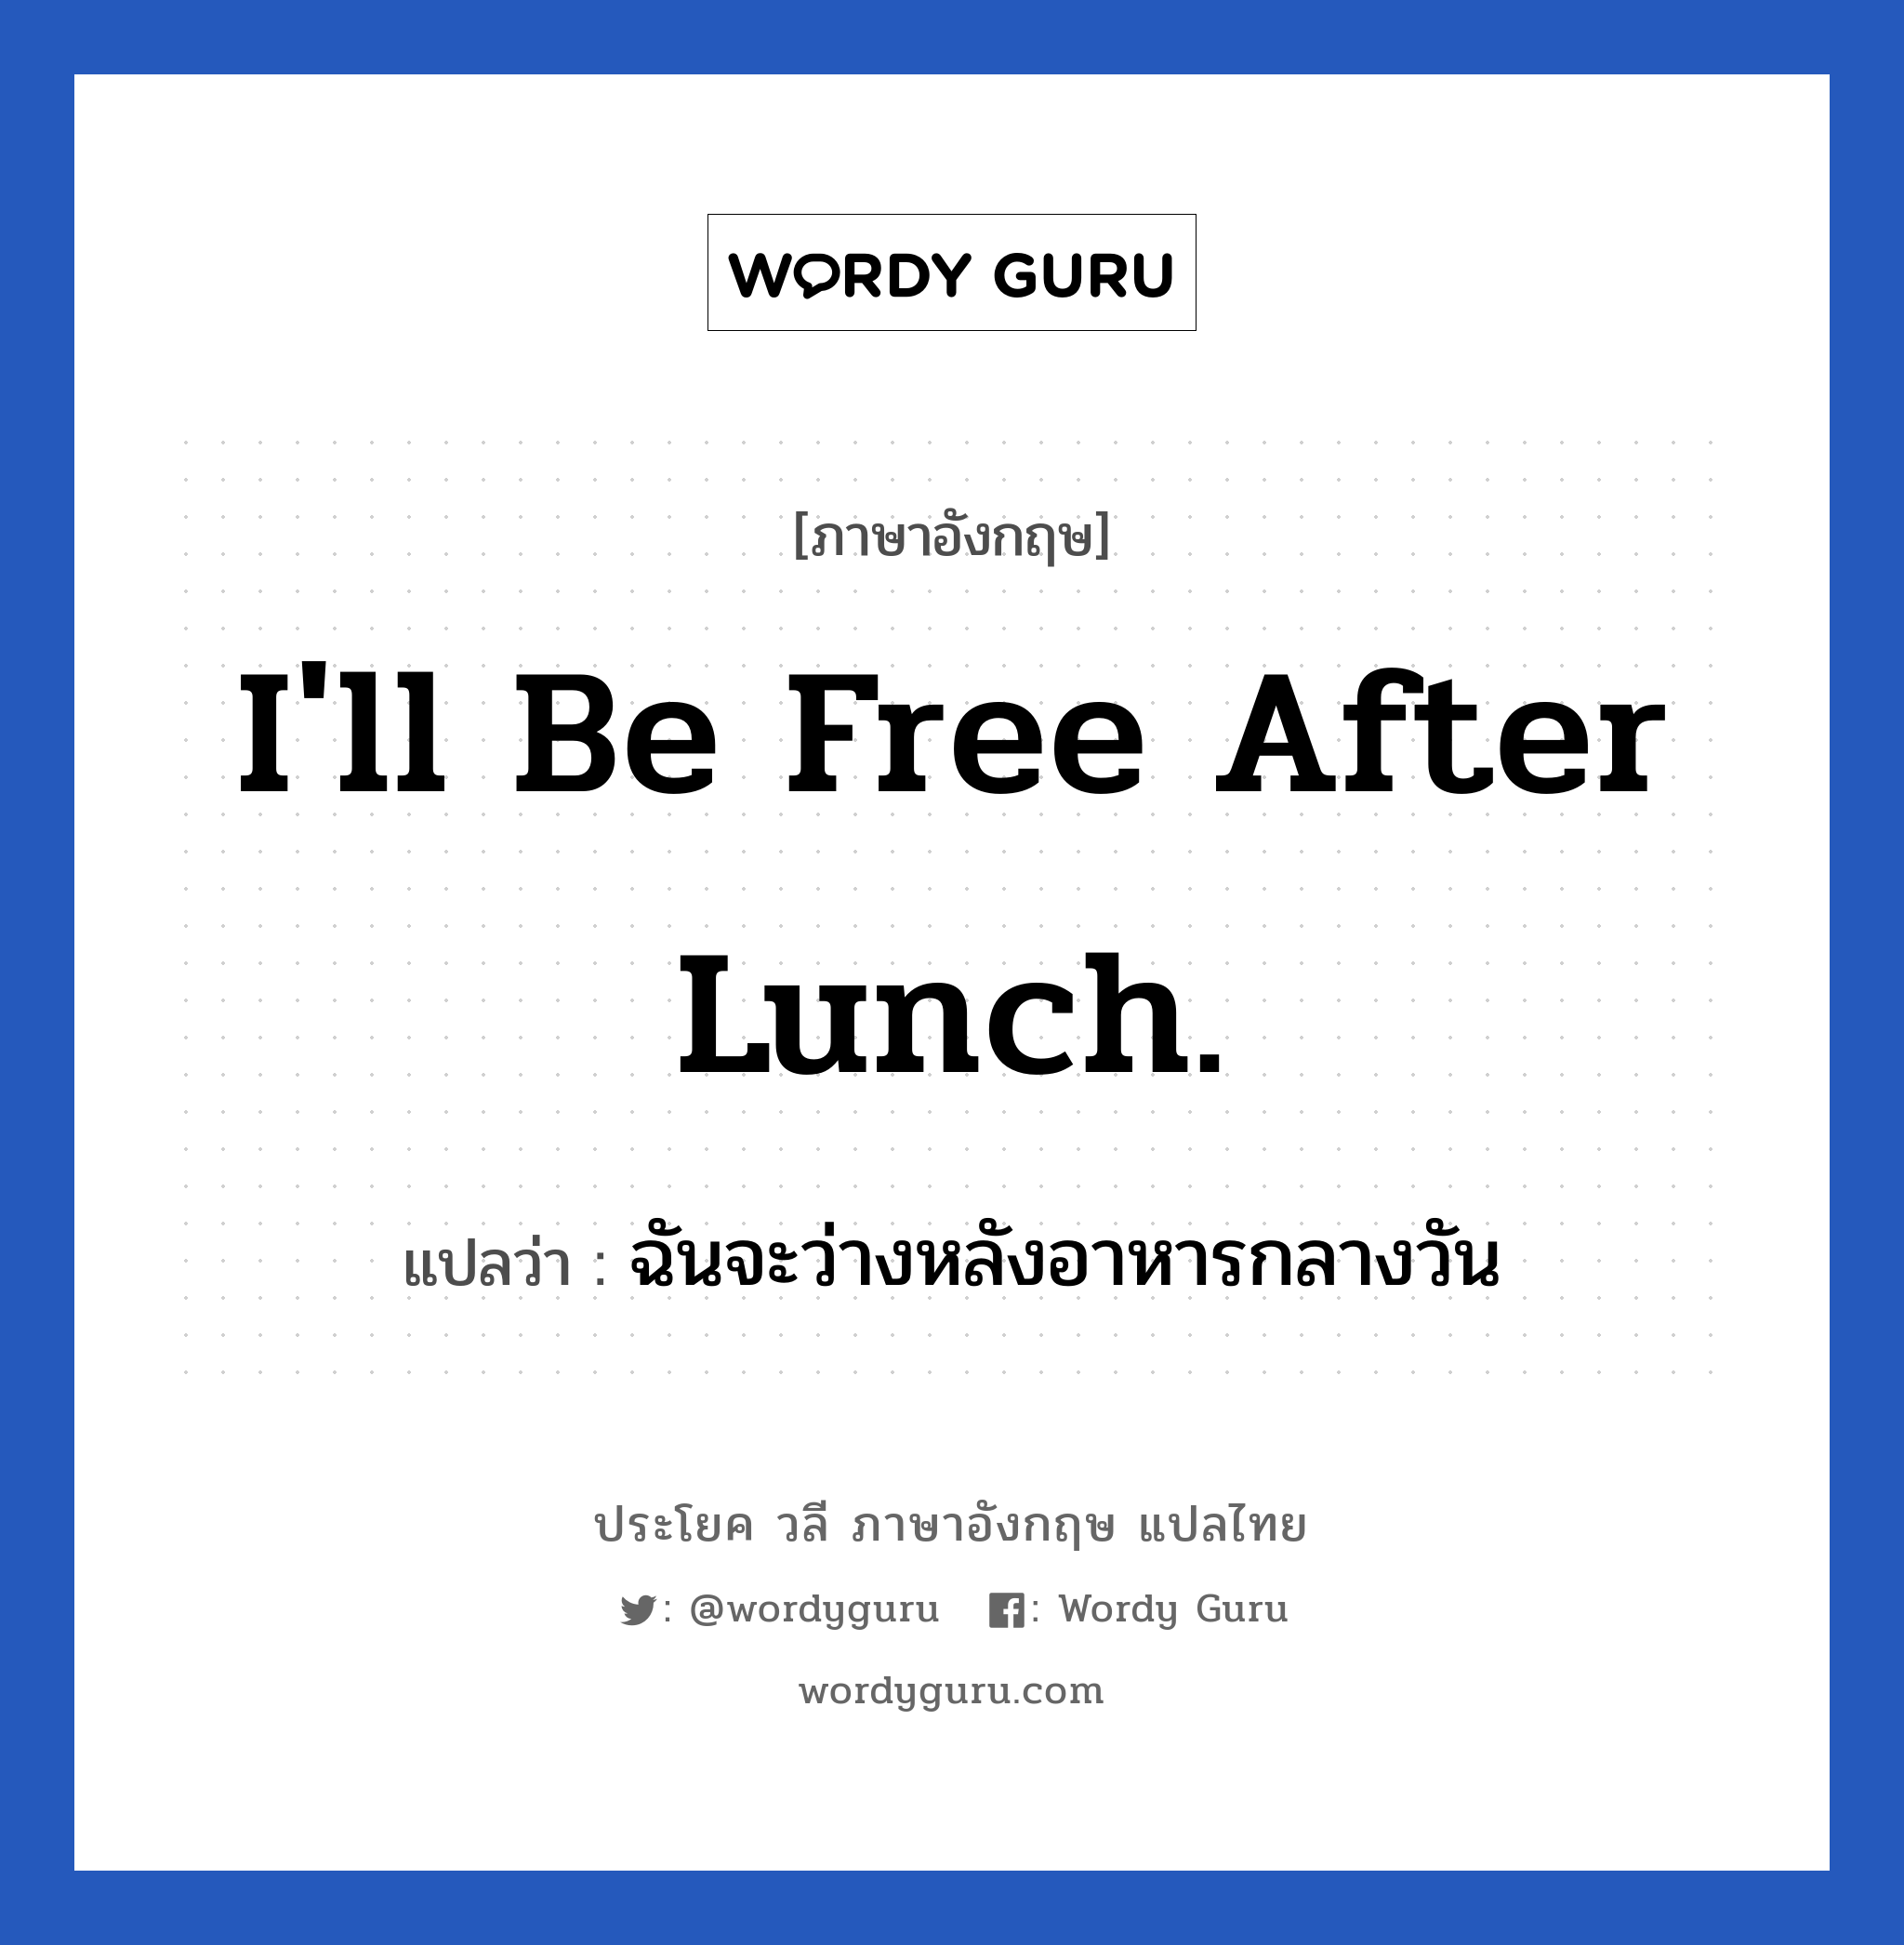 ฉันจะว่างหลังอาหารกลางวัน ภาษาอังกฤษ?, วลีภาษาอังกฤษ ฉันจะว่างหลังอาหารกลางวัน แปลว่า I'll be free after lunch.